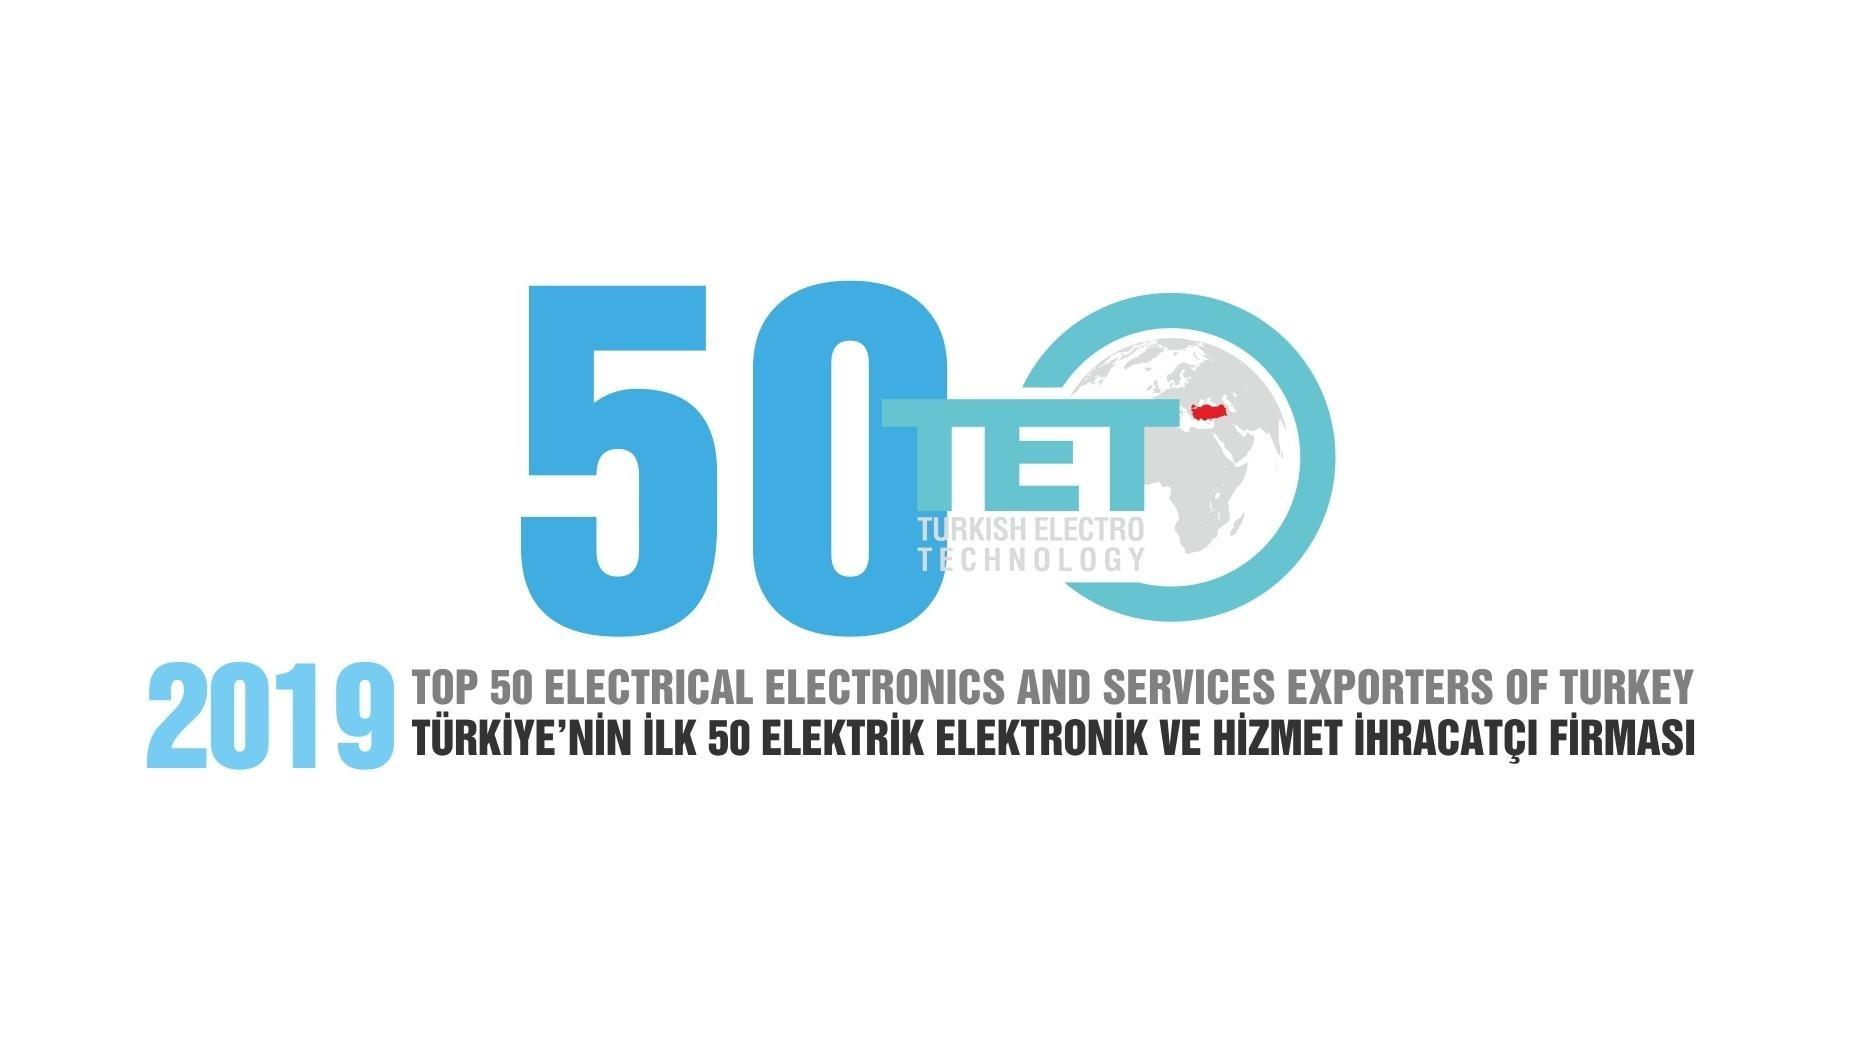 Мы рады сообщить вам, что EMSA была награждена как один из ТОП-50 экспортеров электротехники, электроники и услуг Турции в 2019 году.